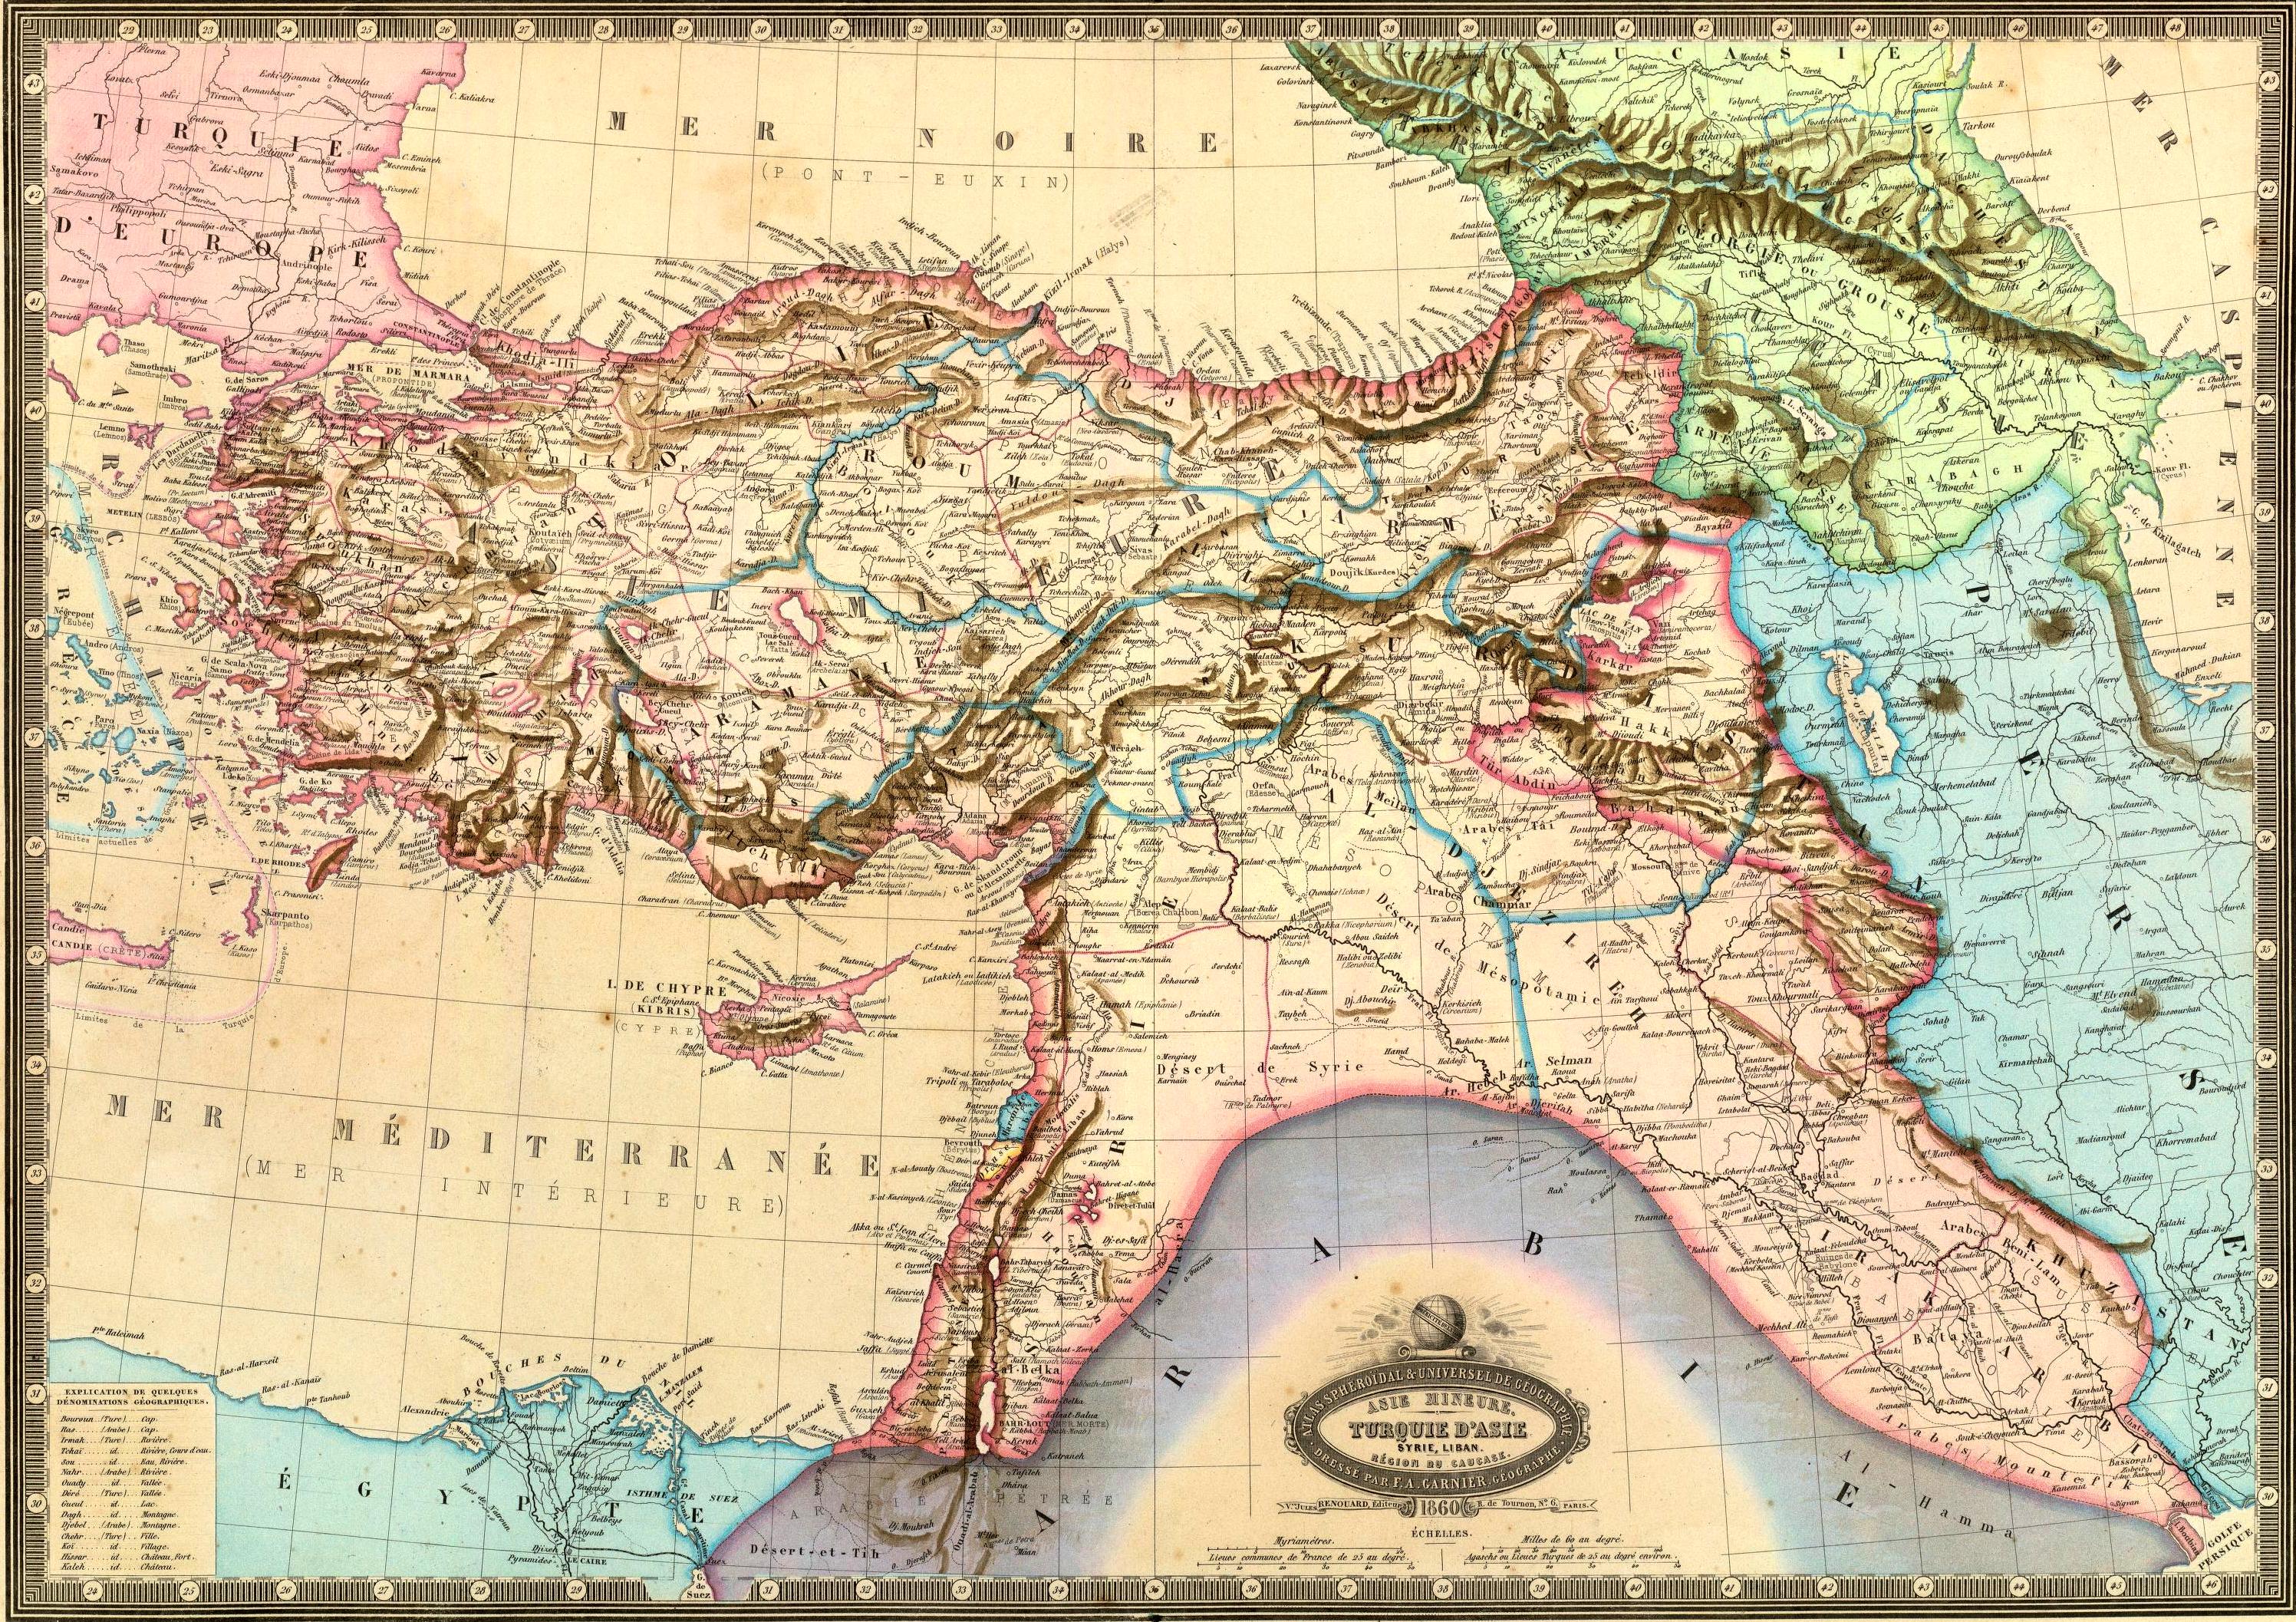 Turkey, maps, Middle East - desktop wallpaper